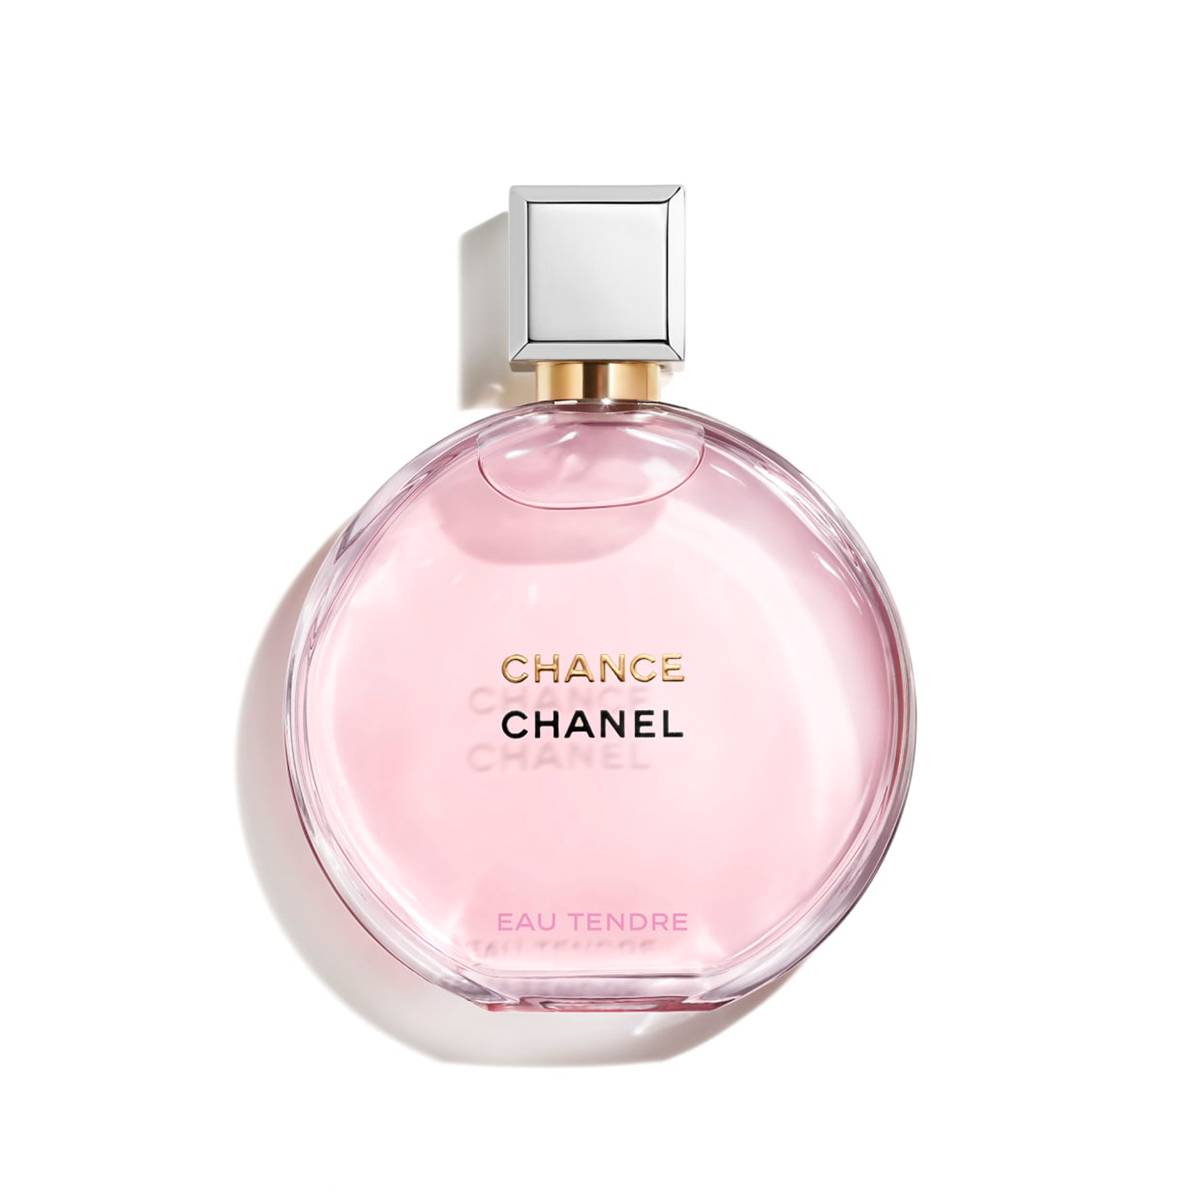 Konačno: Louis Vuitton predstavlja svoju prvu liniju parfema! - Parfemi -  CroModa